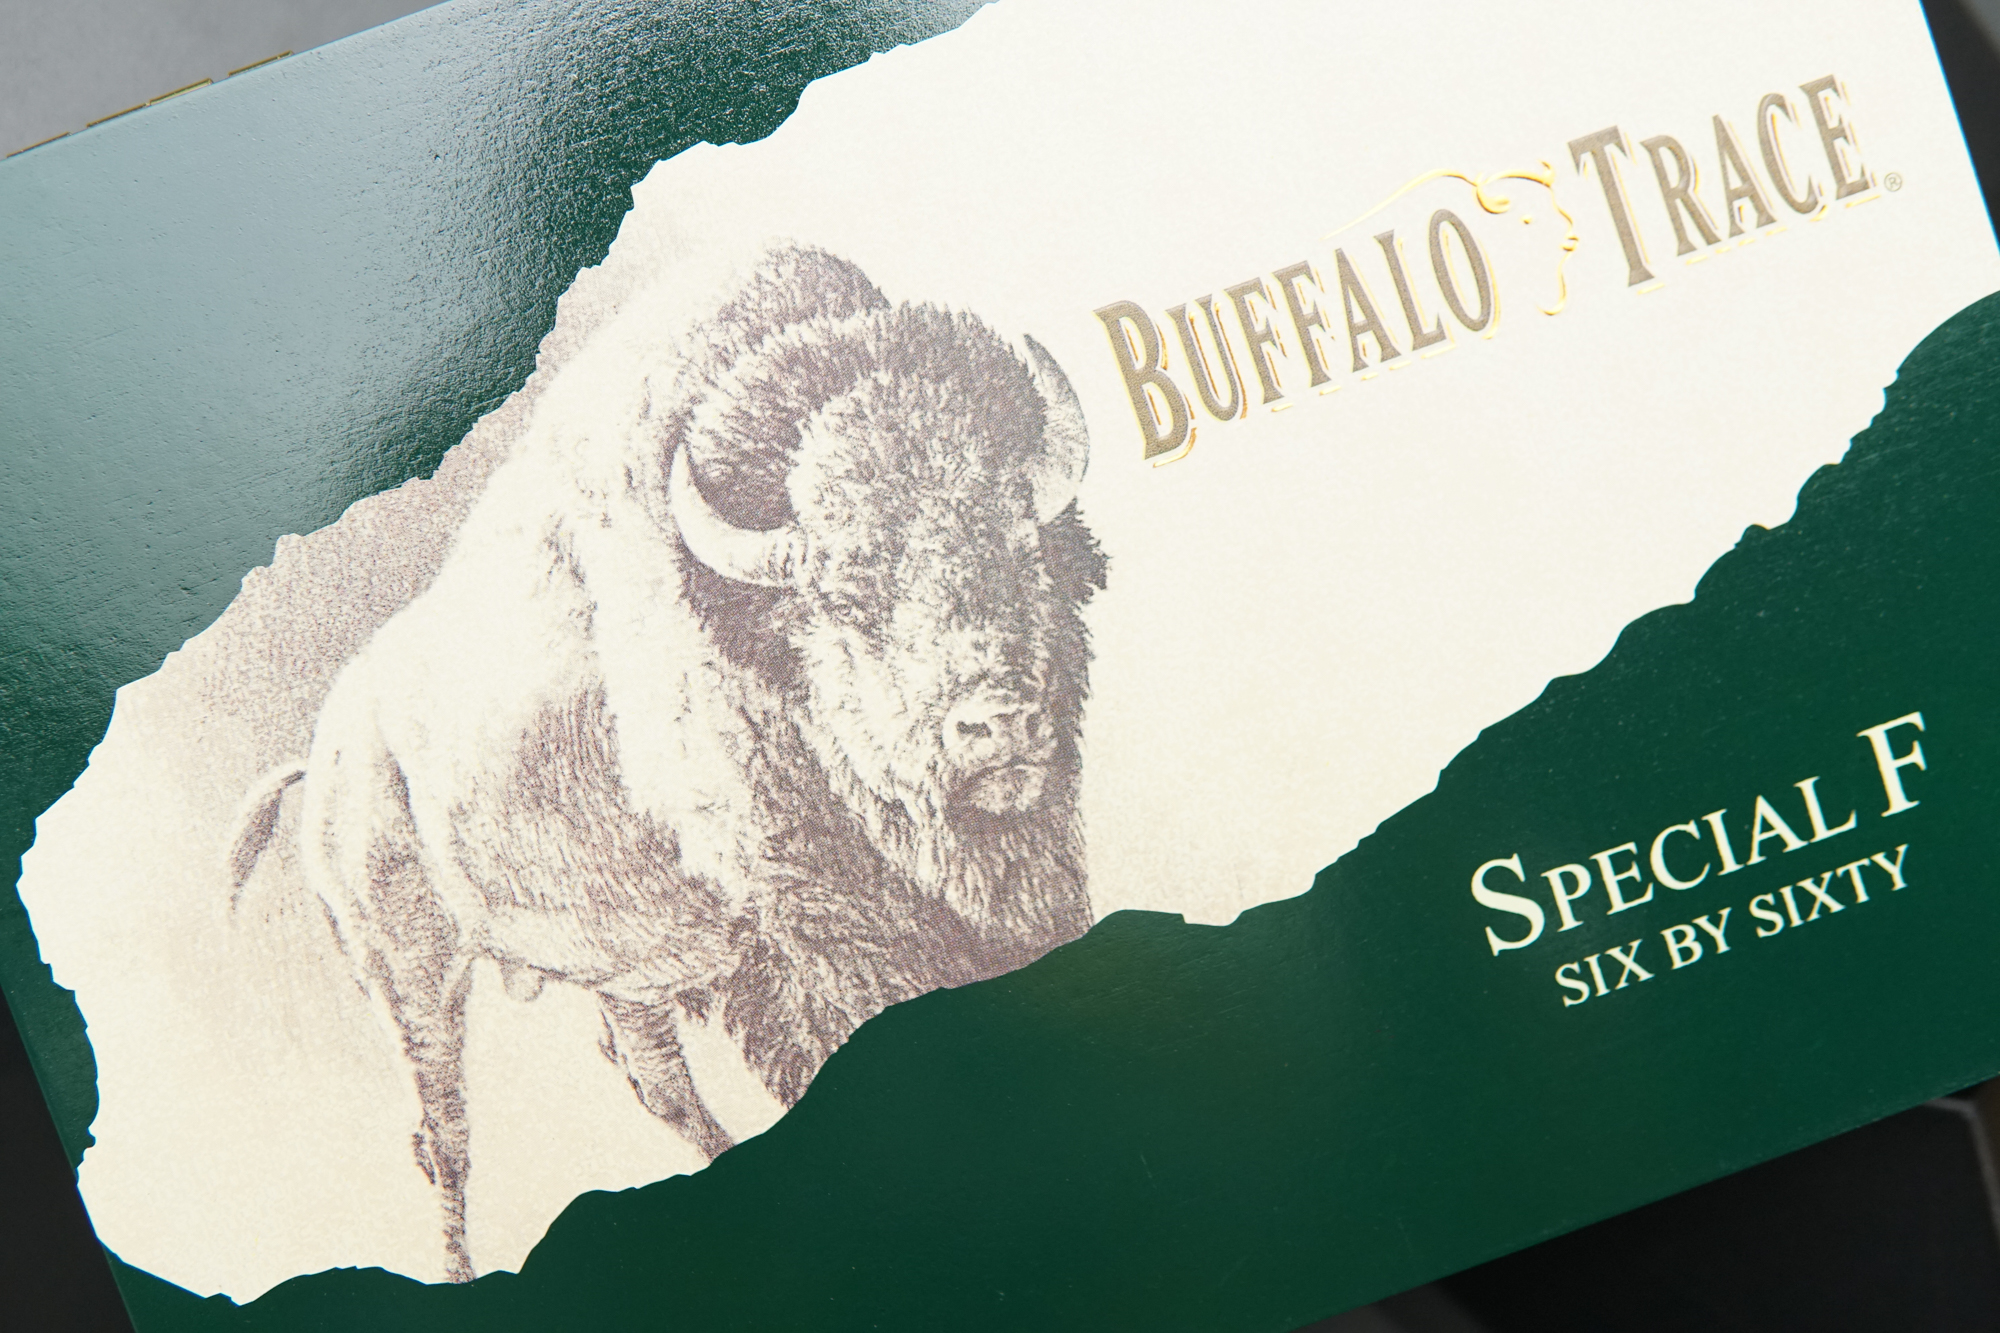 Buffalo Trace Special F Cigars Box